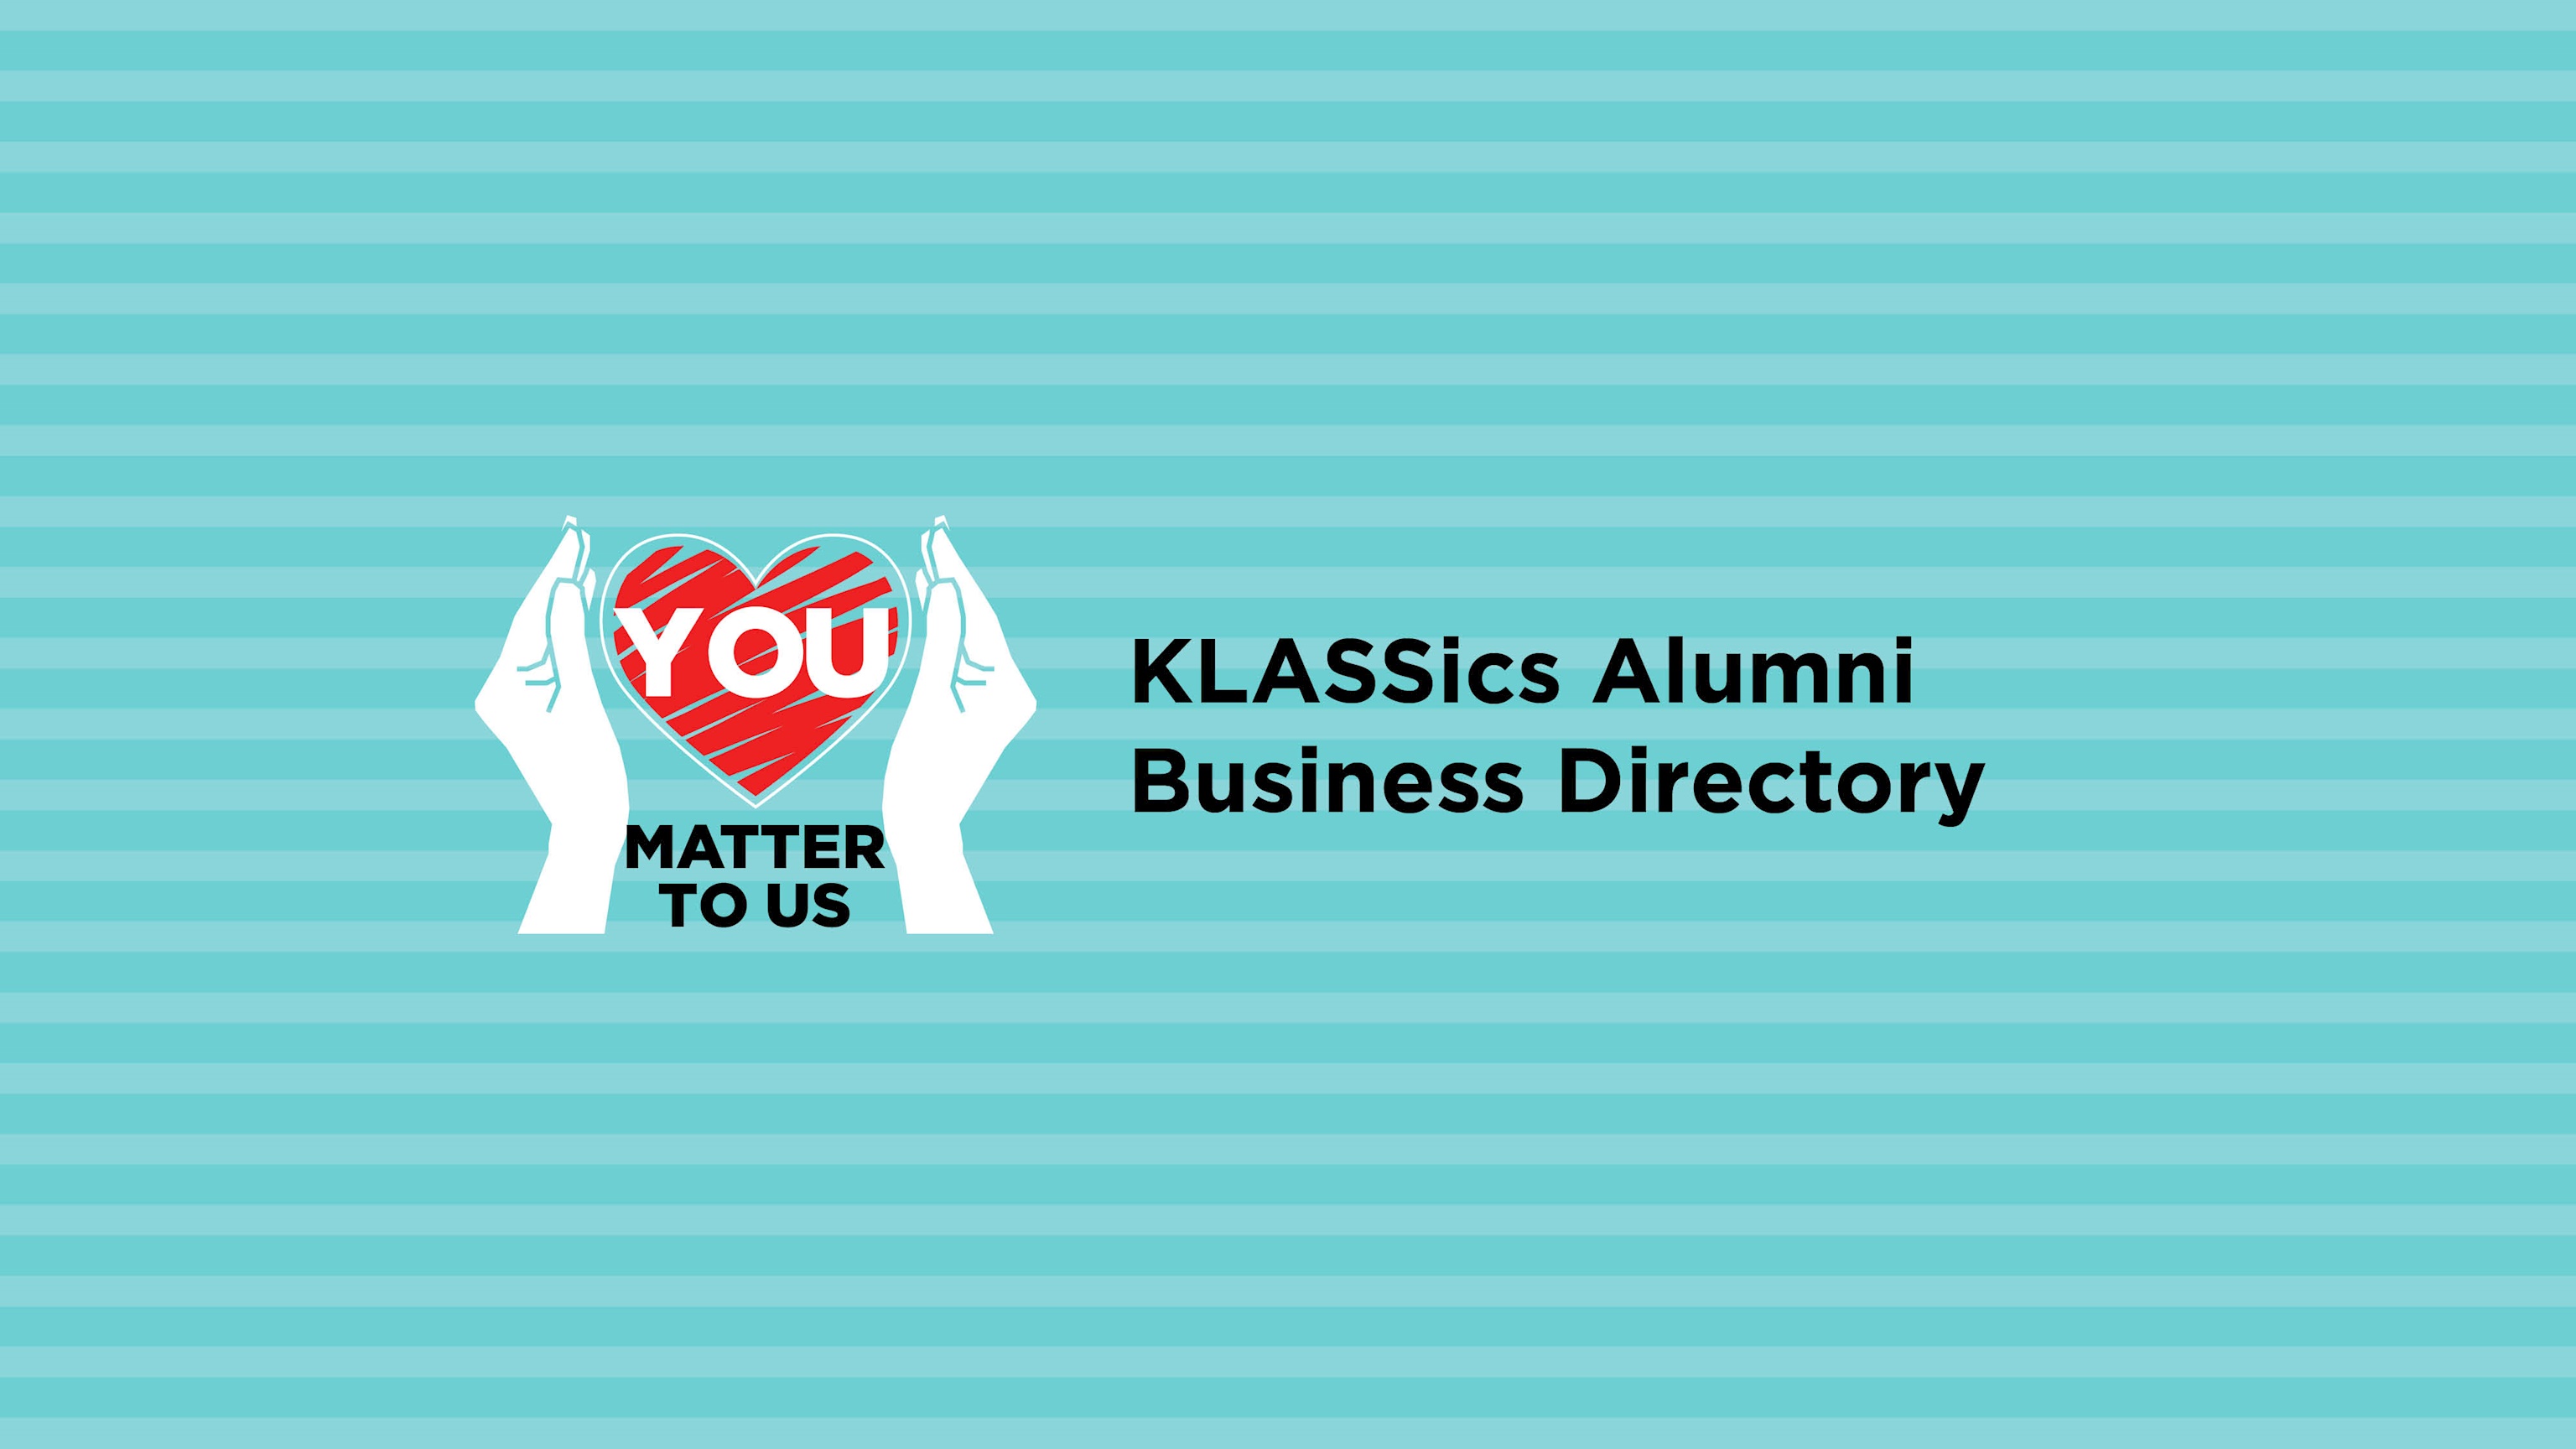 KLASSics Alumni Business Directory